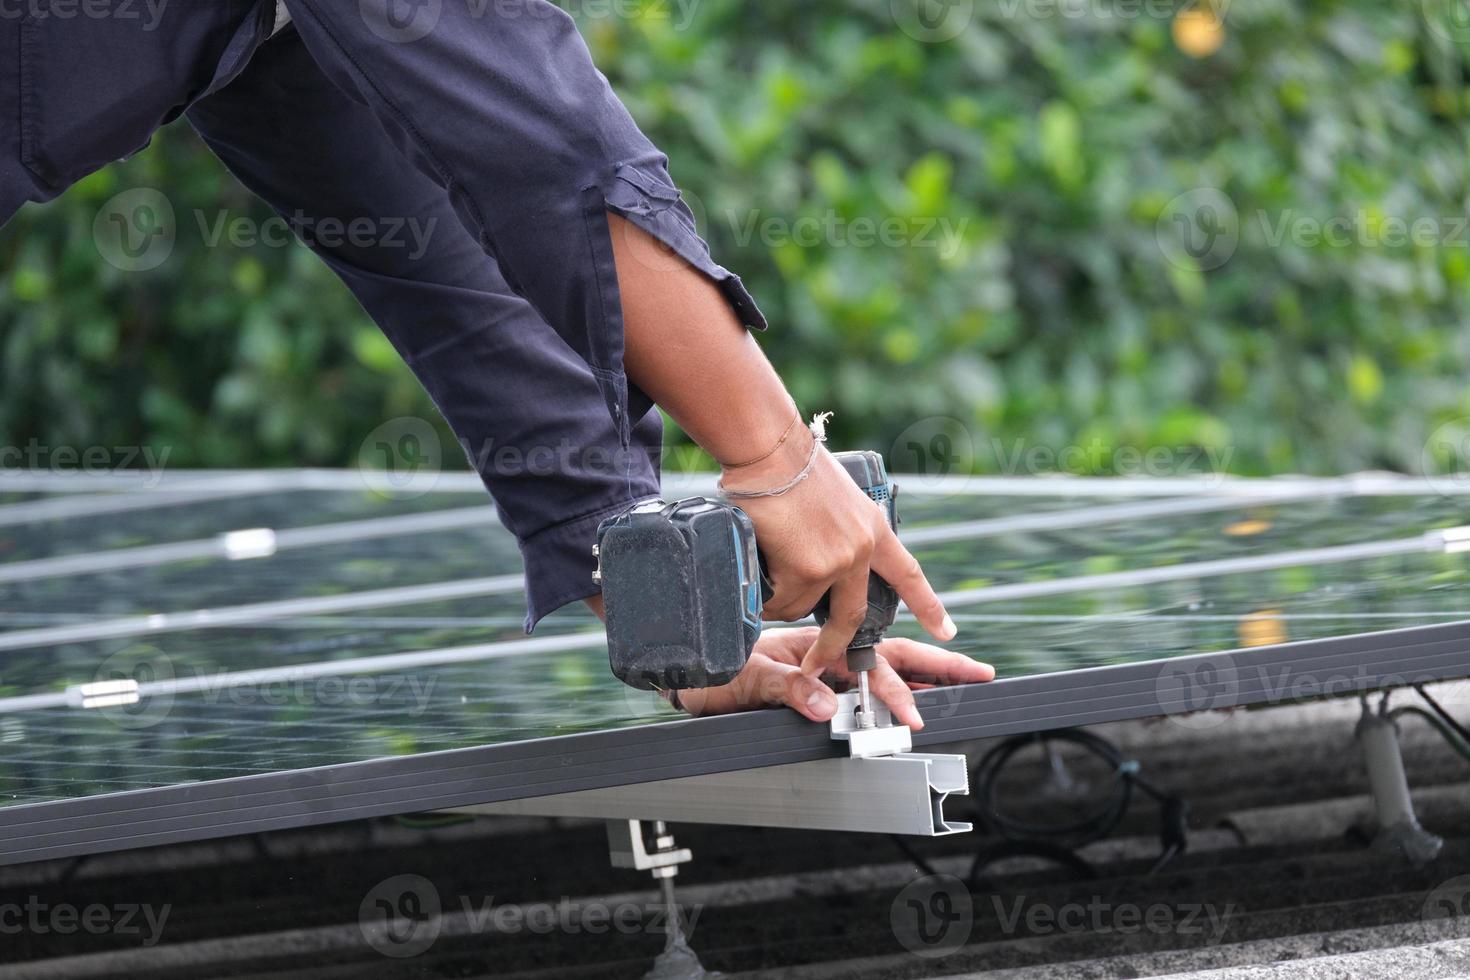 Elektriker männlich verwenden Akku-Bohrmaschine arbeiten Aluminiumschiene installieren. professioneller techniker arbeitnehmereinstellung verbinden elektrisches metall auf dachhaus für solarzelle foto